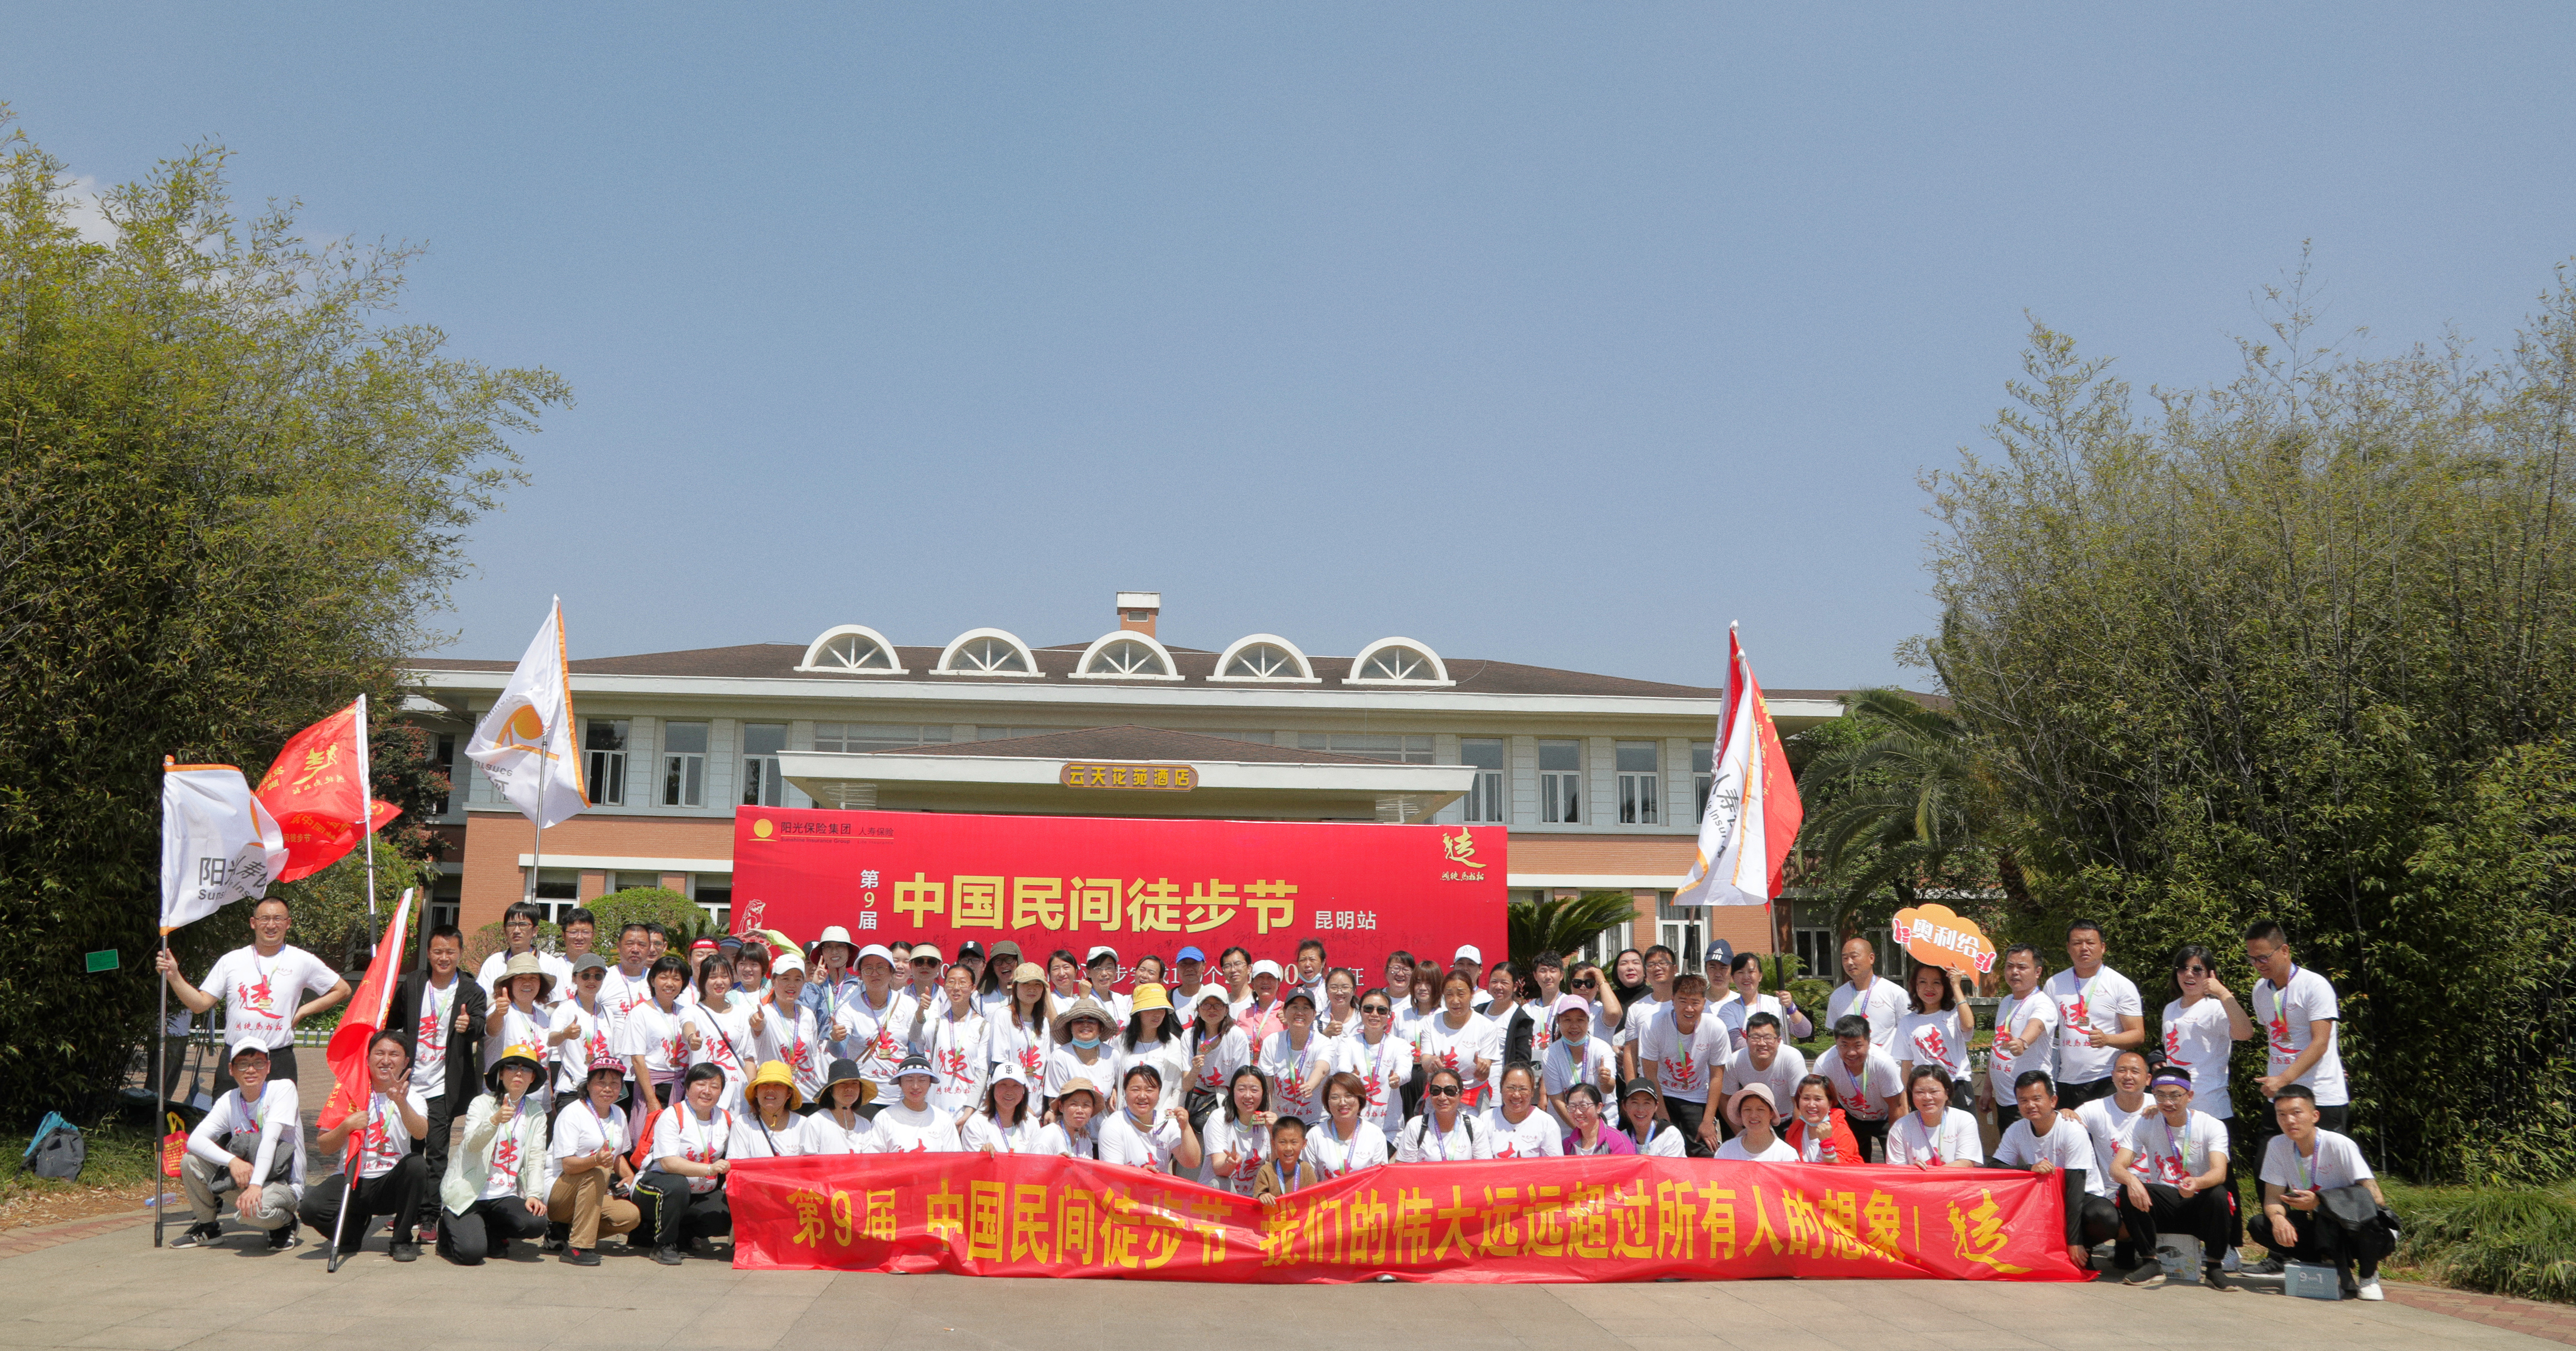 中国民间徒步节暨第九届鸿徒马拉松活动在昆明启动